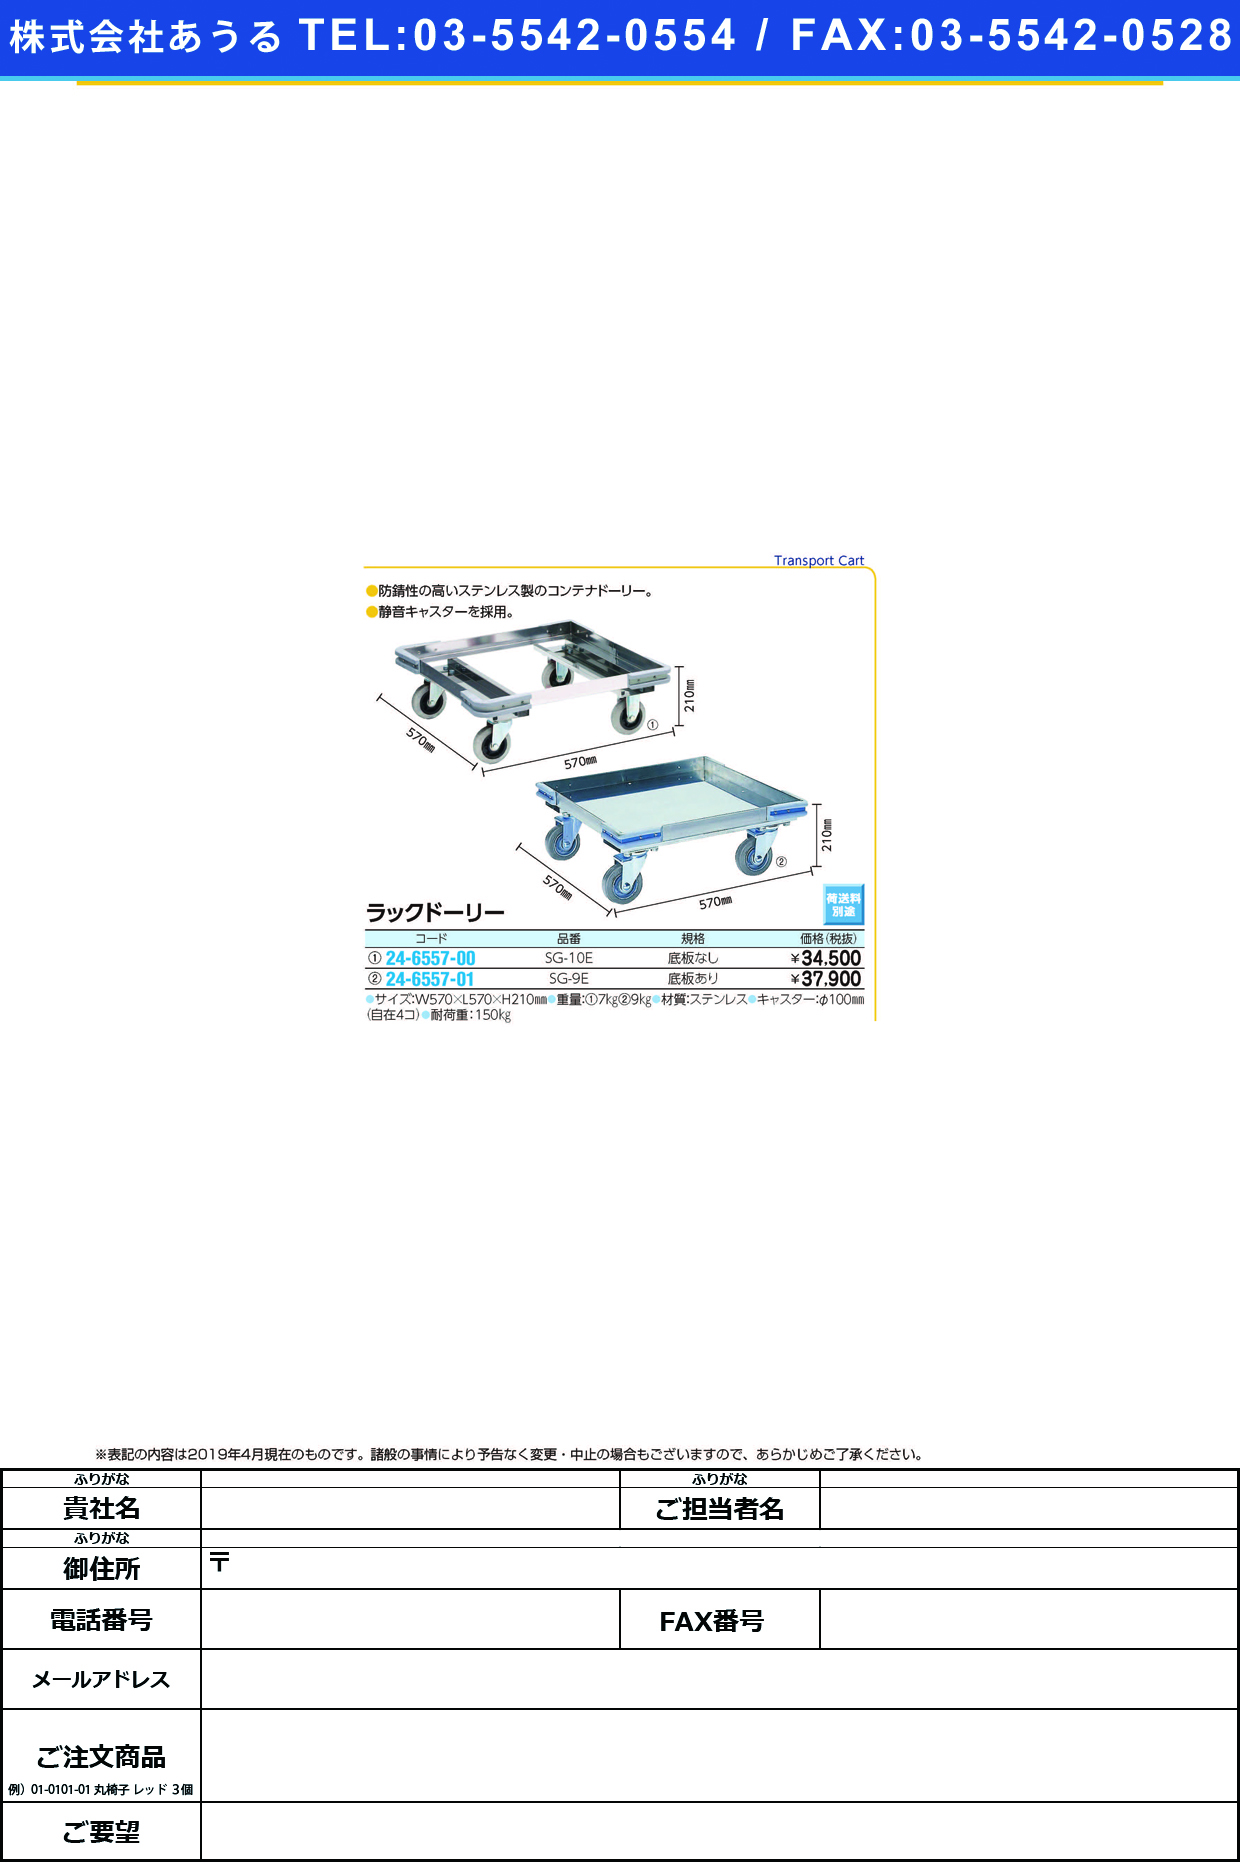 (24-6557-00)ラックドーリー（底板なし） SG-10E ﾗｯｸﾄﾞｰﾘｰ(ｿｺｲﾀﾅｼ)(金沢車輛)【1台単位】【2019年カタログ商品】